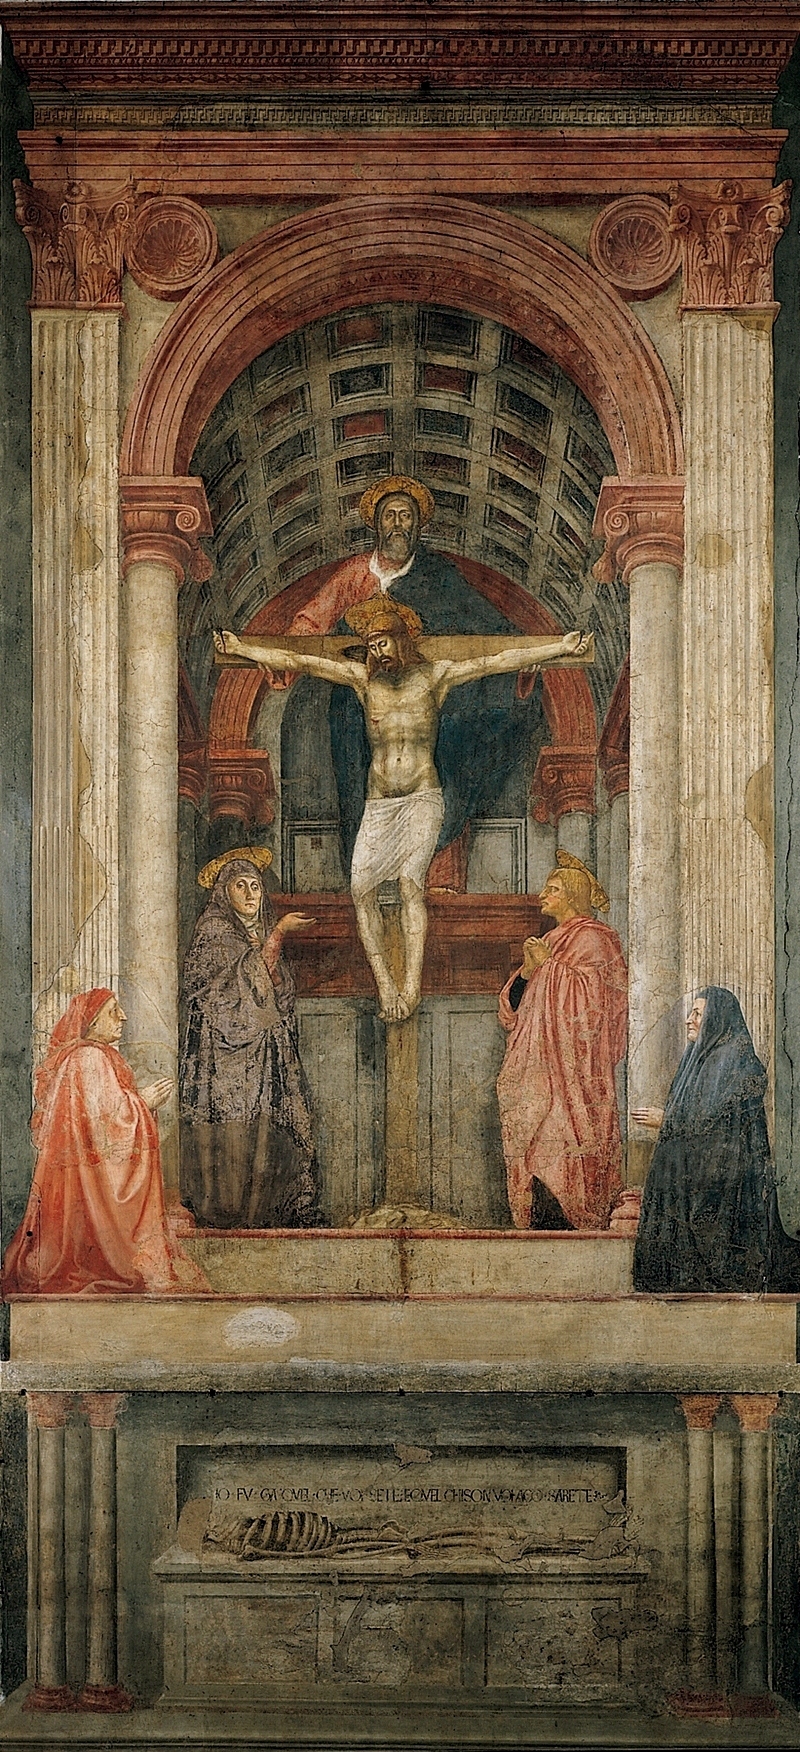 Trinidad de Masaccio